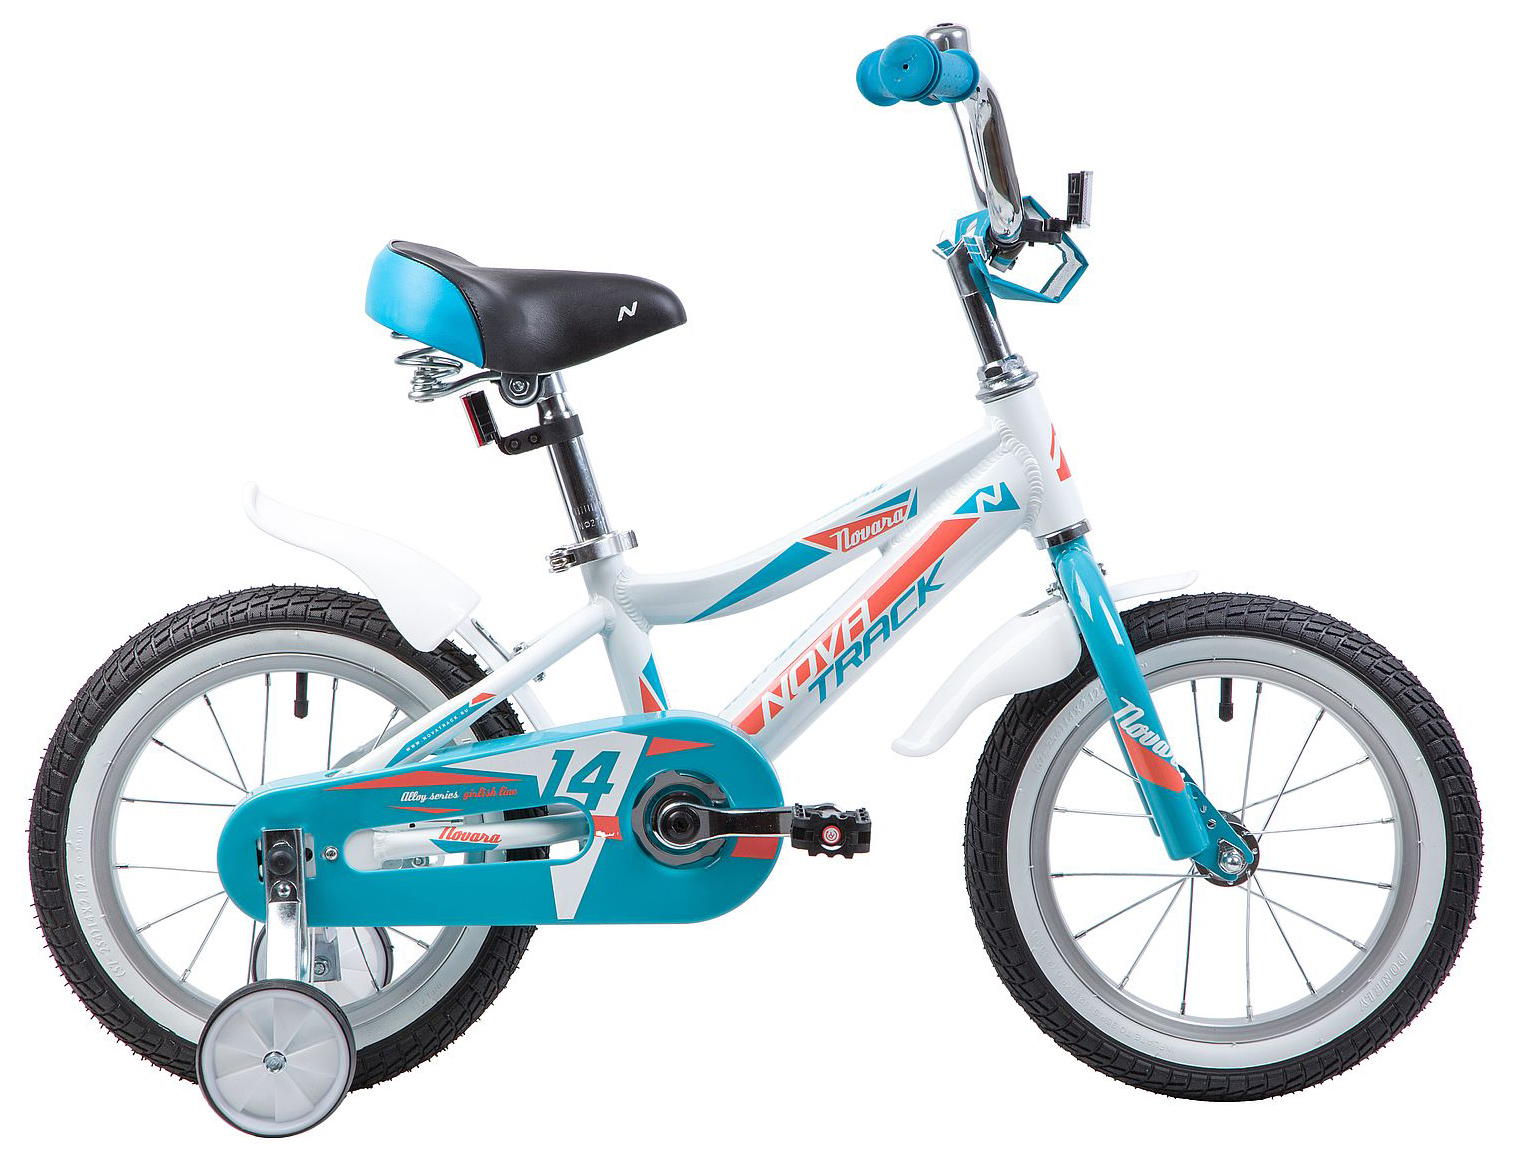  Отзывы о Детском велосипеде Novatrack Novara 14 2019